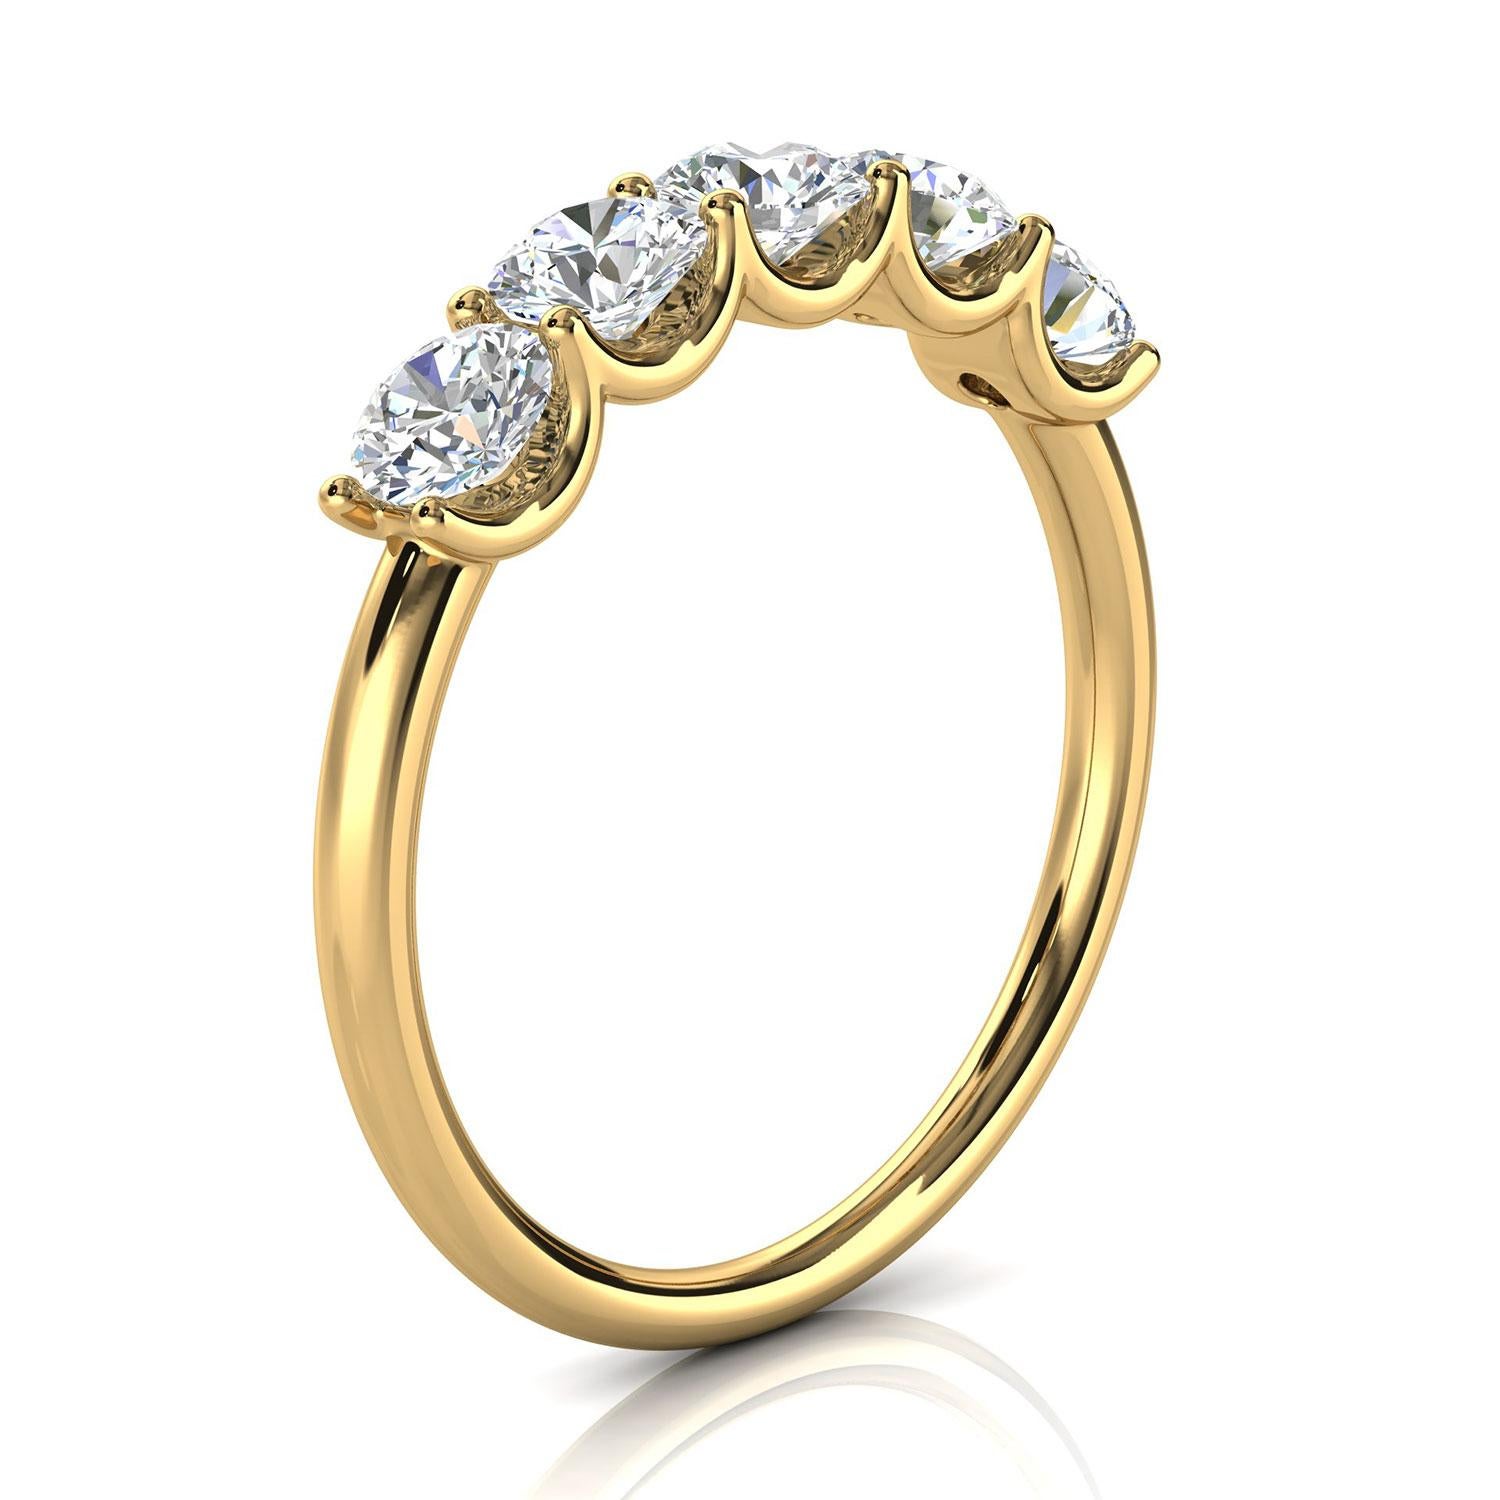 Dieser Ring verfügt über fünf (5) schwimmende Brilliante runde Diamanten in 